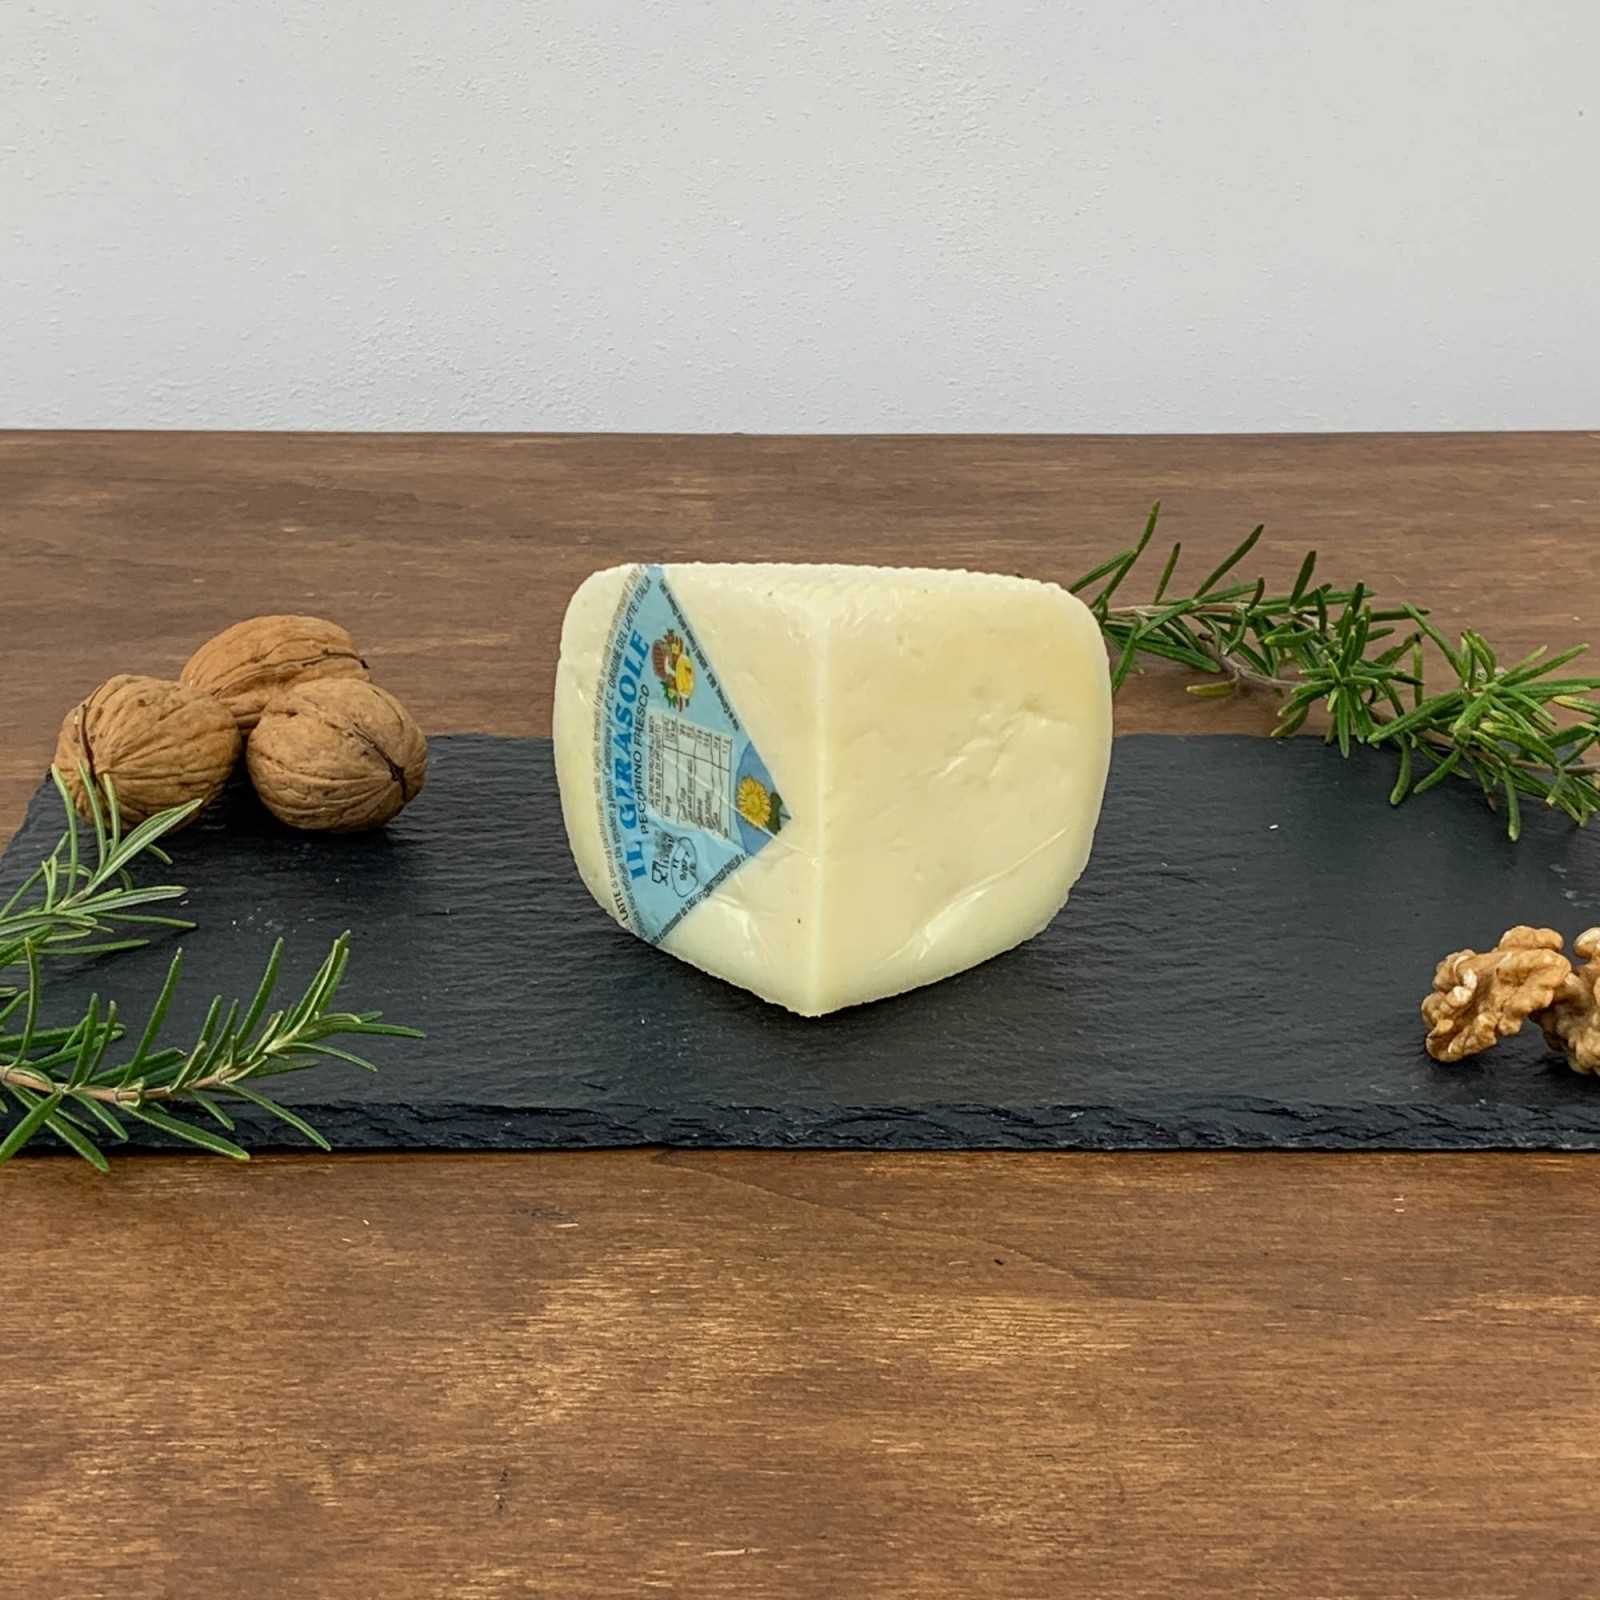 Der „Primo Sale” Pecorino-Käse „Il Girasole” ist ein typisch toskanischer Weichkäse, der aus Schafsvollmilch erster Wahl gewonnen, einem kurzen Reifeprozess unterzogen und vakuumverpackt wird. Es zeichnet sich durch einen süßen und leichten Geschmack sowie einen sehr frischen und zarten Duft aus.